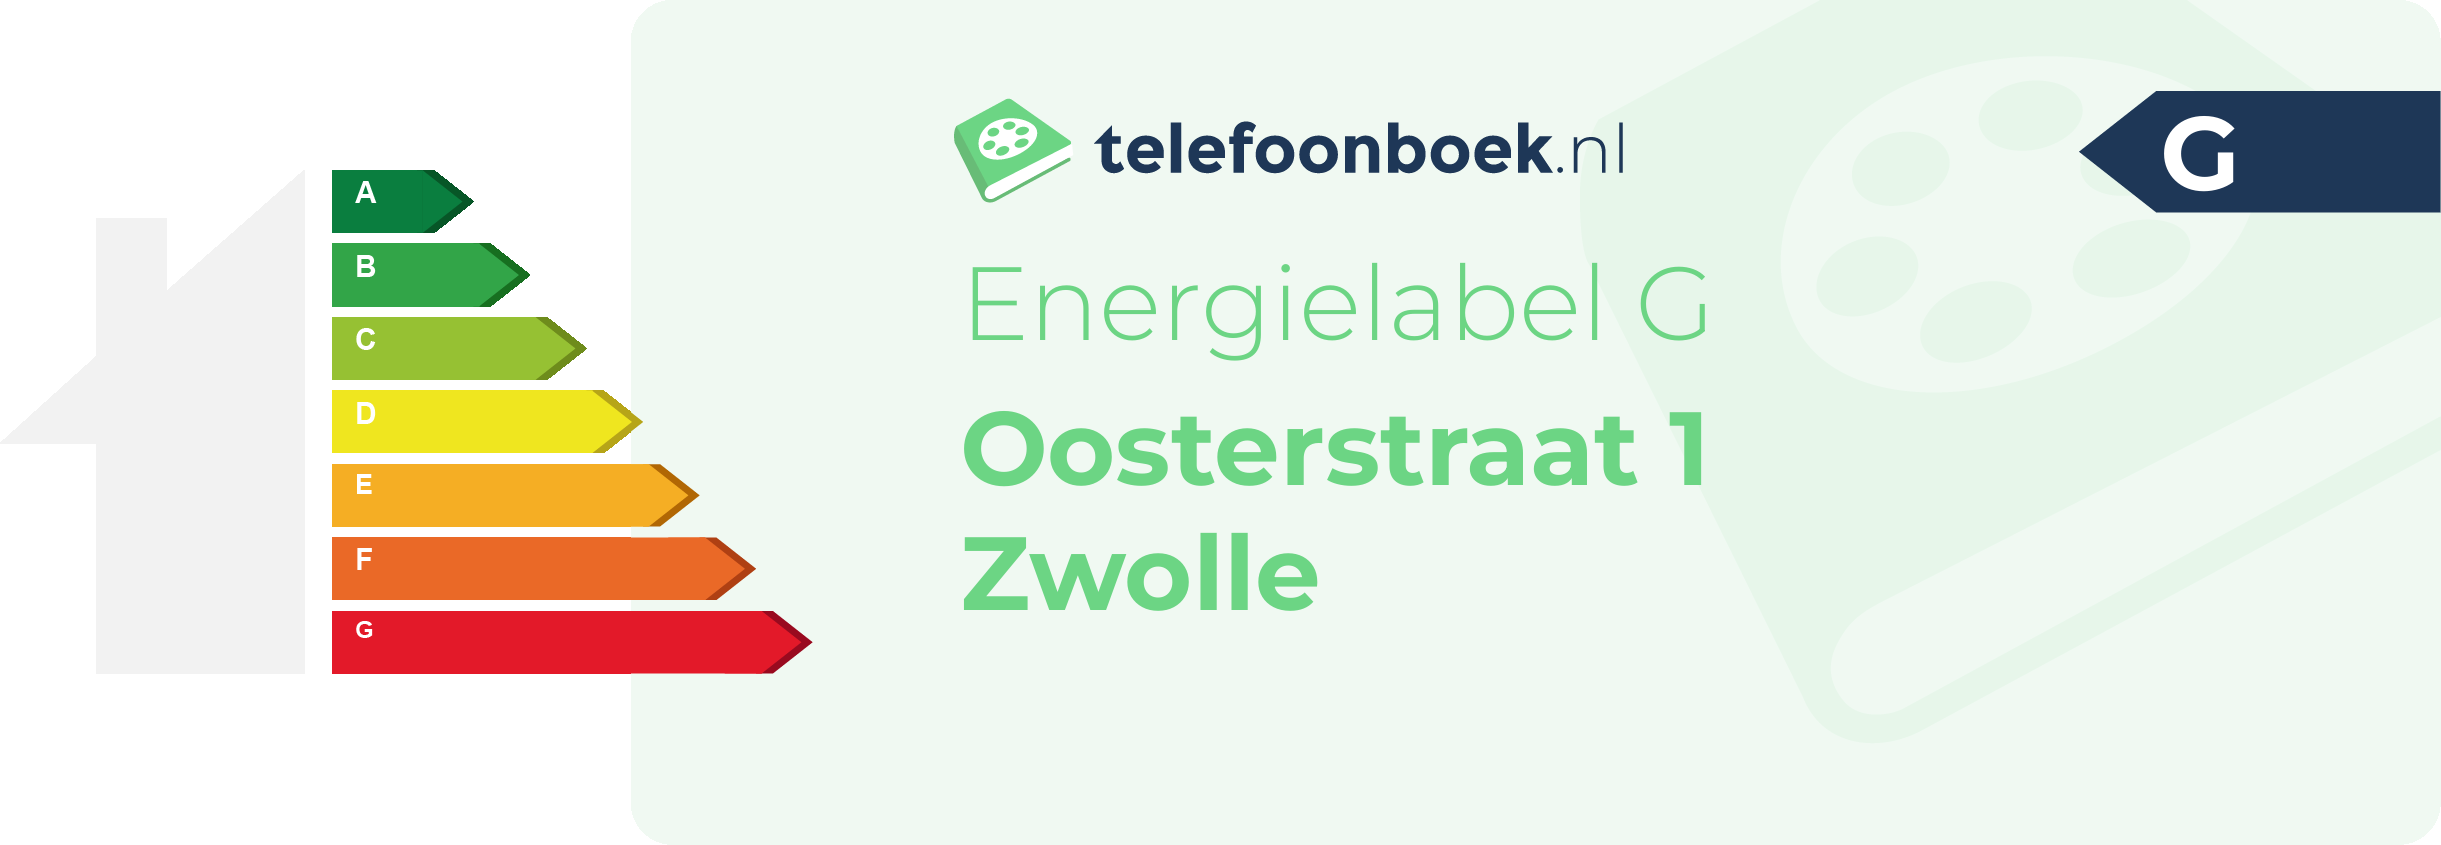 Energielabel Oosterstraat 1 Zwolle